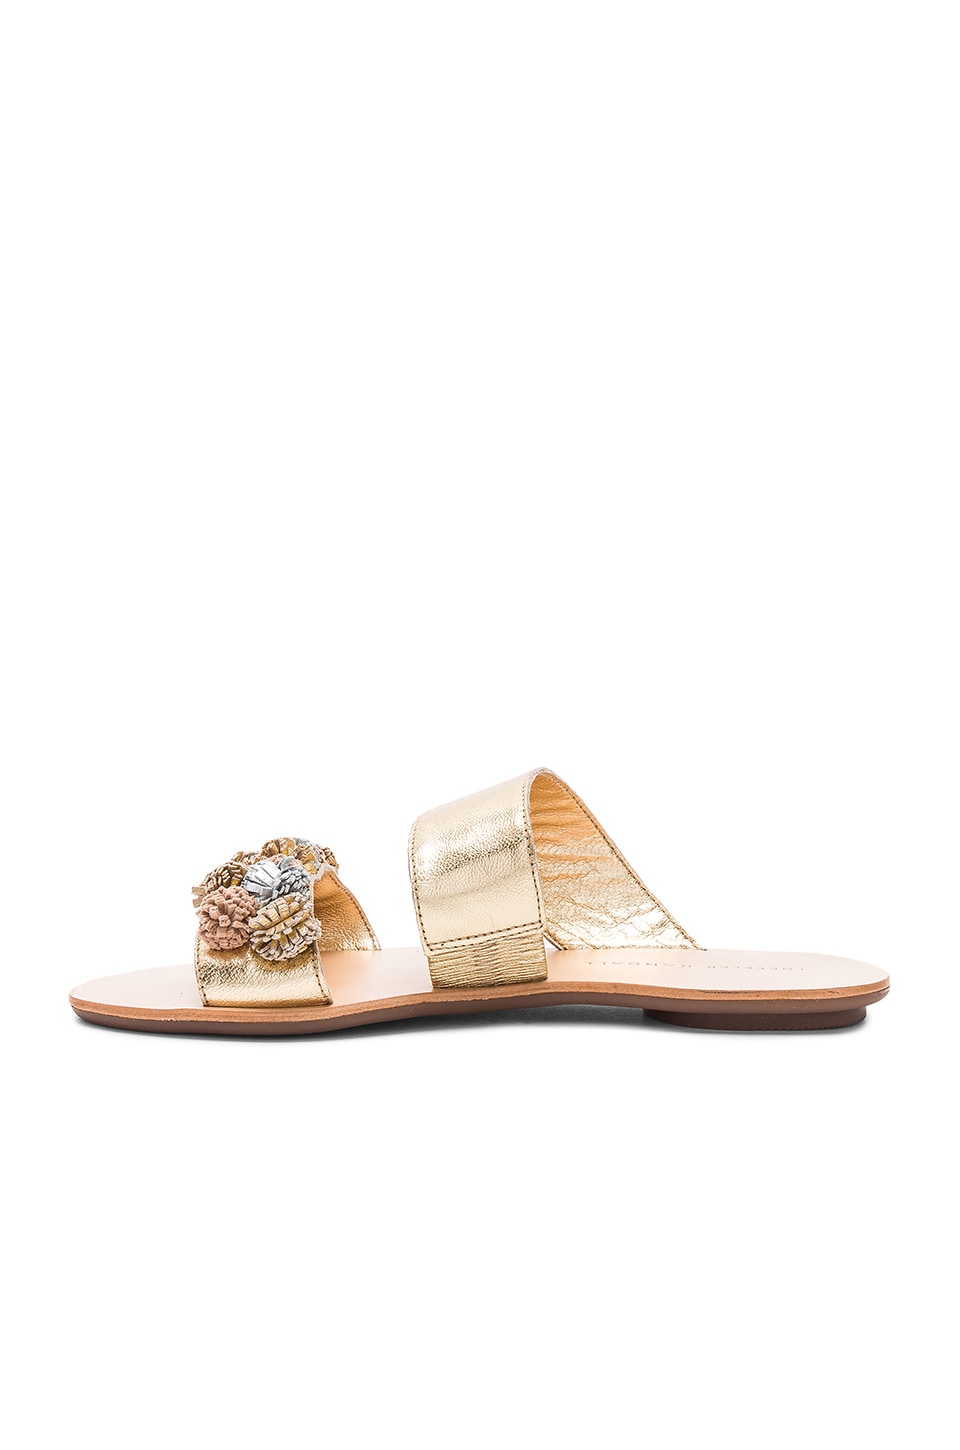 LOEFFLER RANDALL Clem Sandal in Gold & Multi Metallic | ModeSens